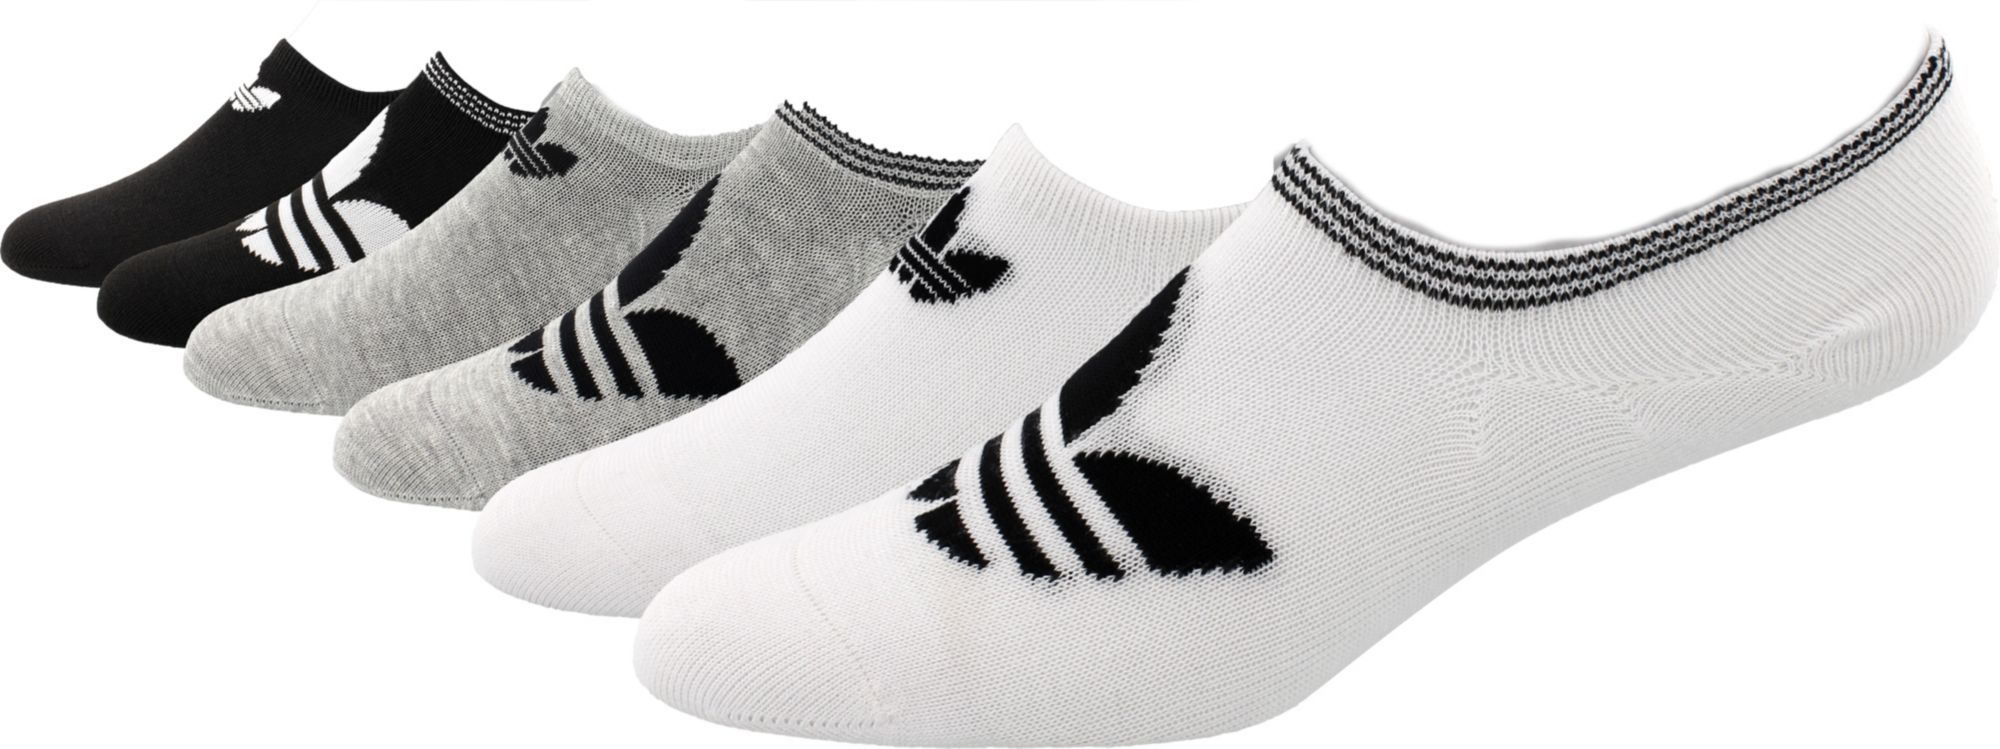 adidas invisible socks